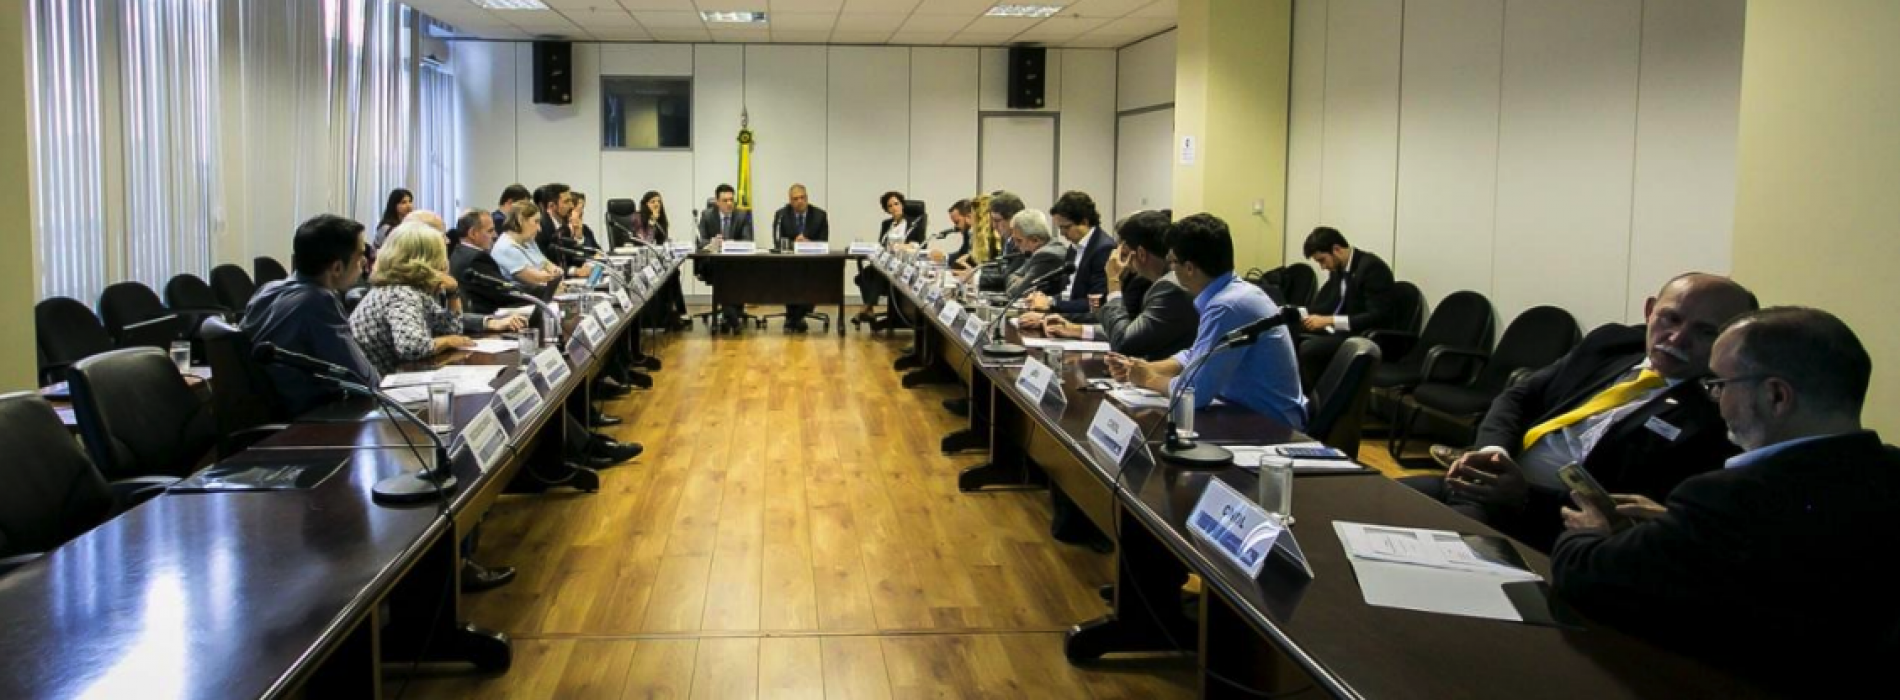 ABMAPRO participa da 12ª Reunião do Fórum de Competitividade do Varejo, promovido pelo Ministério da Indústria, Comércio Exterior e Serviços (MDIC), em Brasília